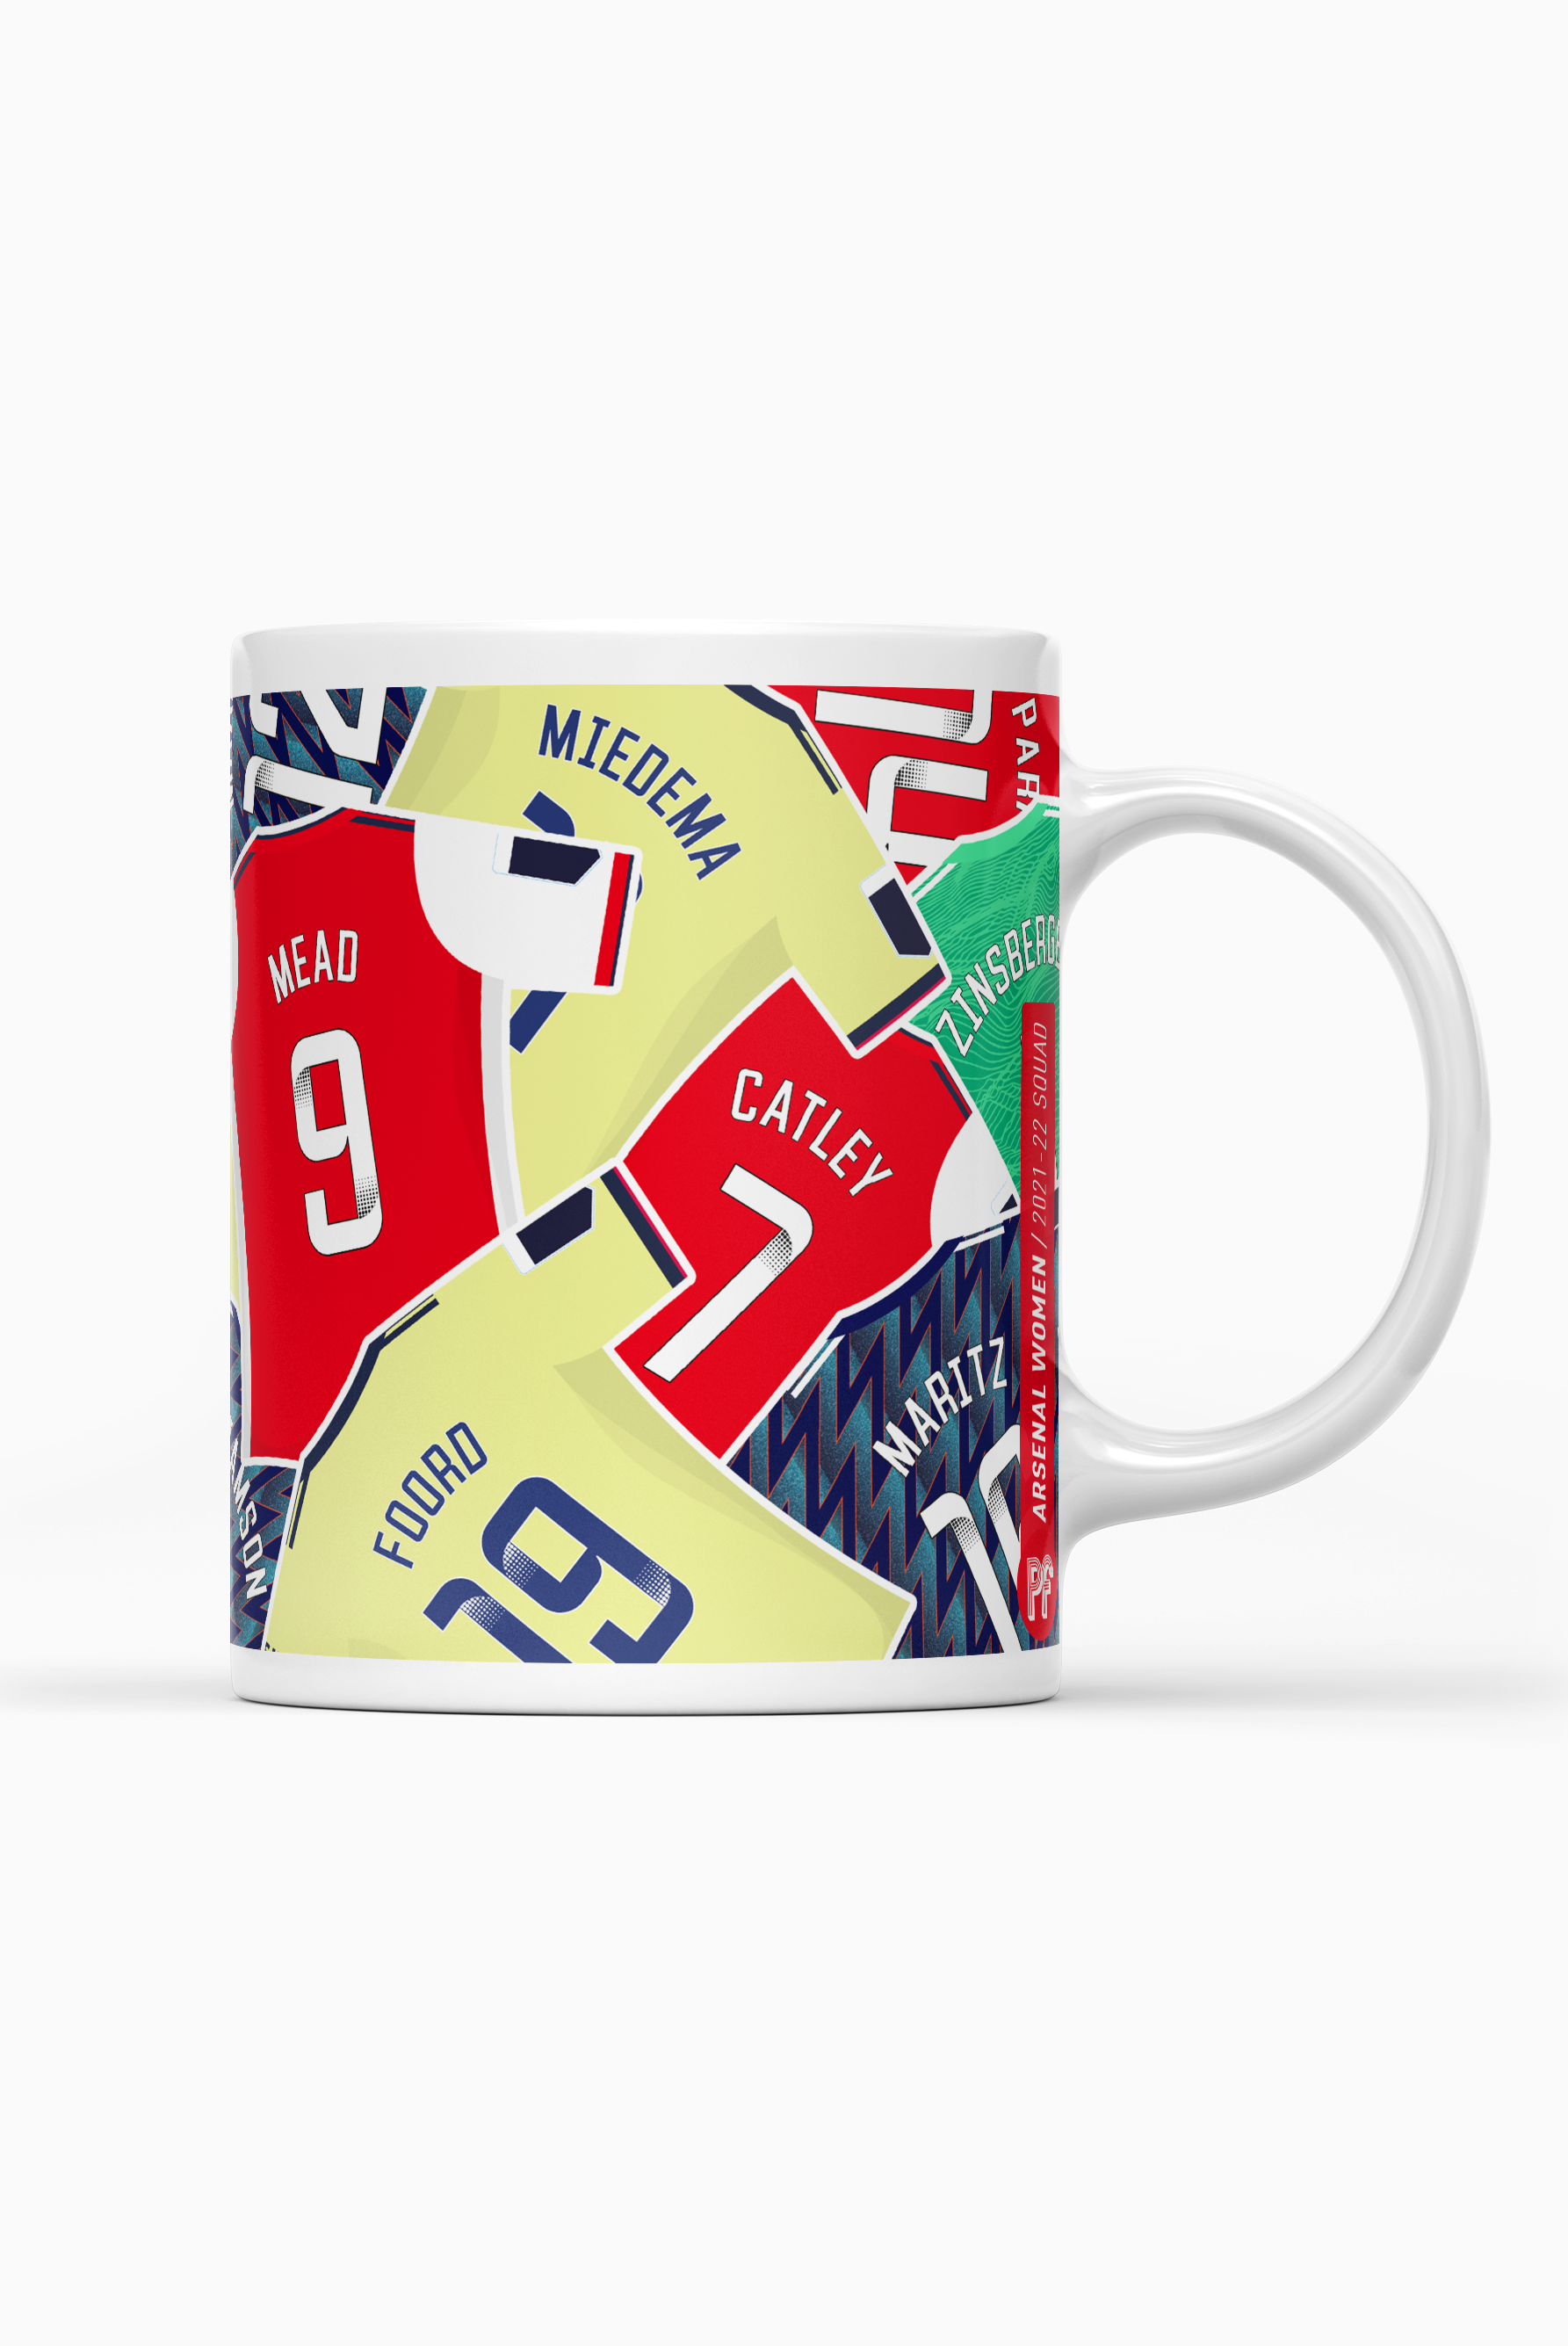 Arsenal Women / 2021-22 Squad Mug